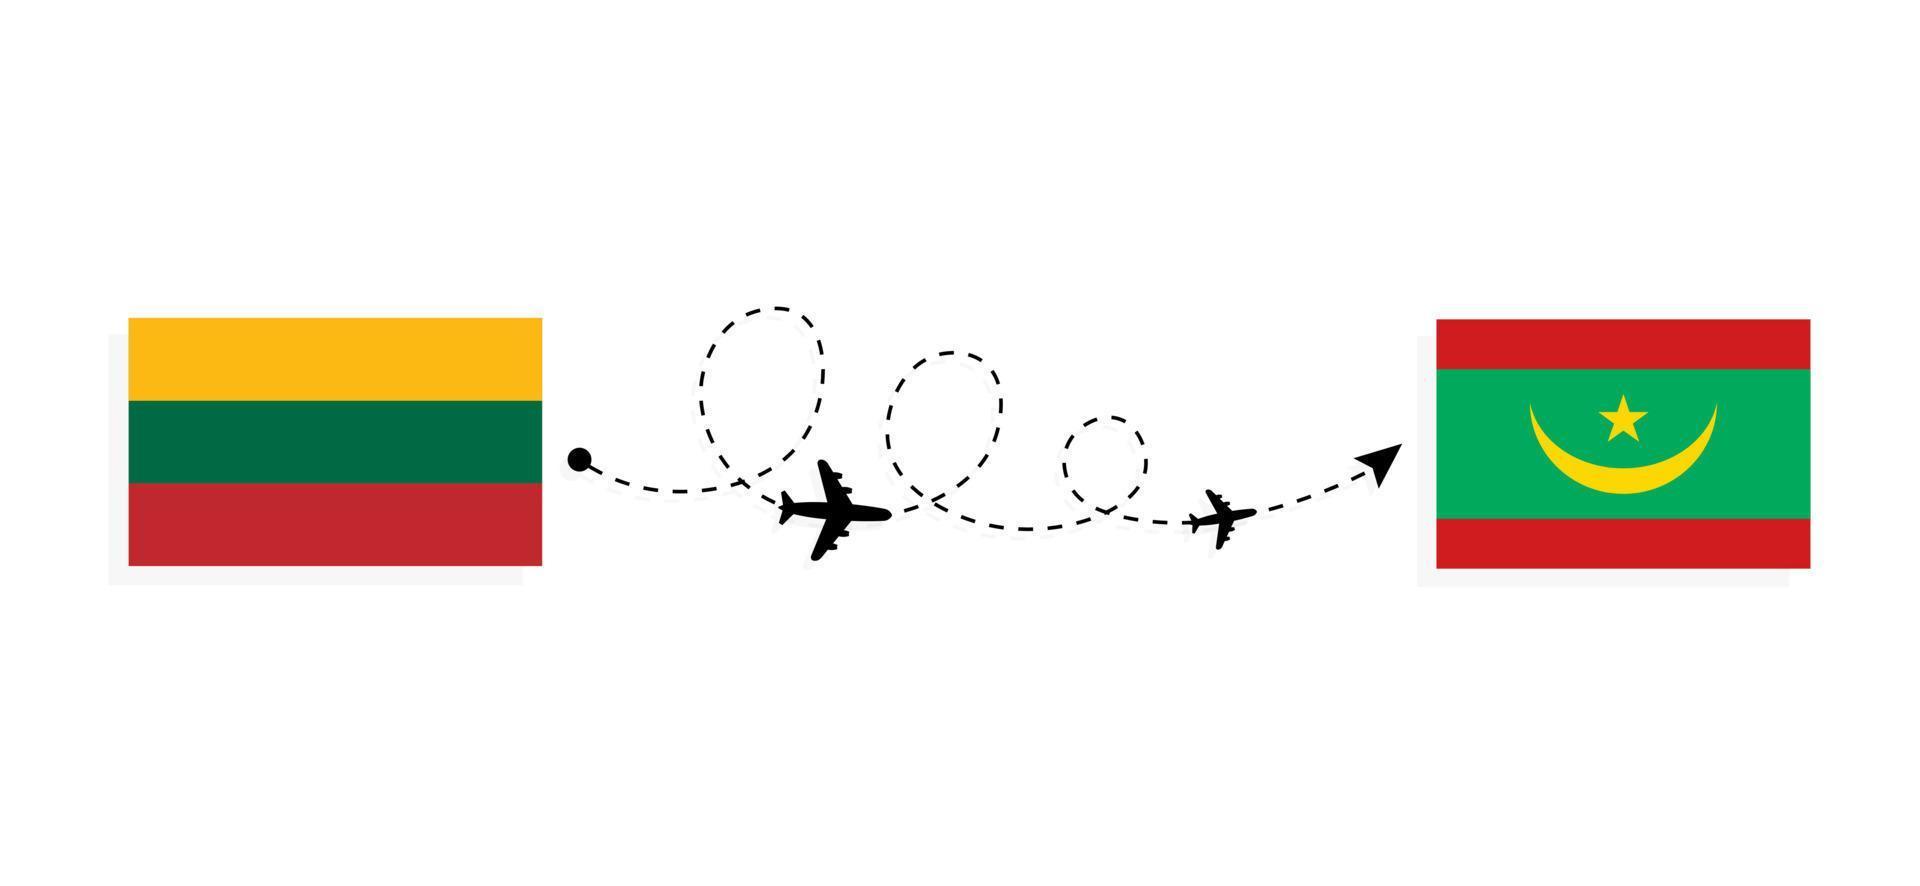 flyg och resor från Litauen till Mauretanien med resekoncept för passagerarflygplan vektor